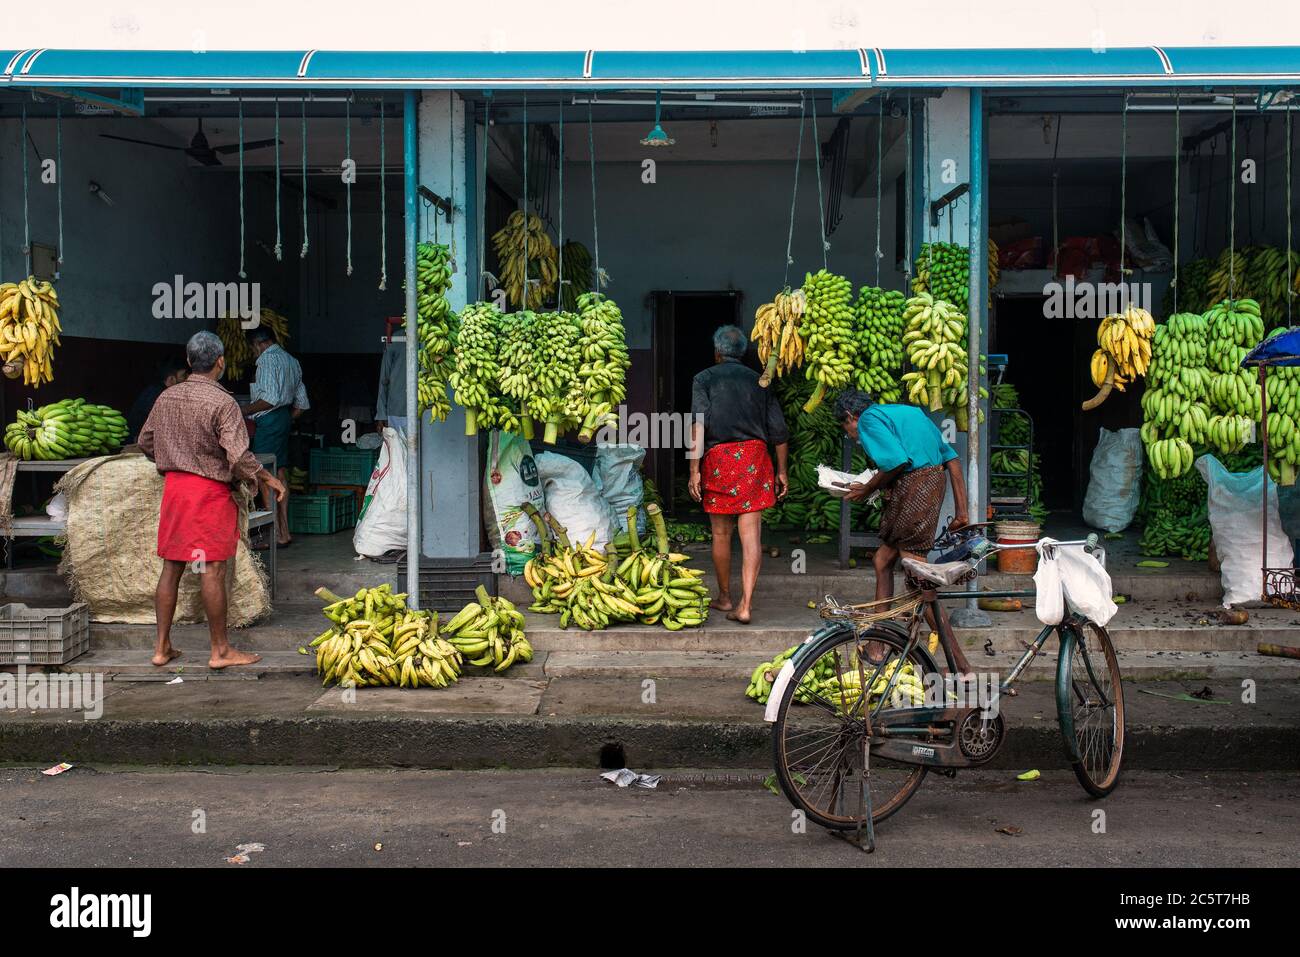 Bananiers dans le marché de rue, fort Cochi, Kerala, Inde Banque D'Images